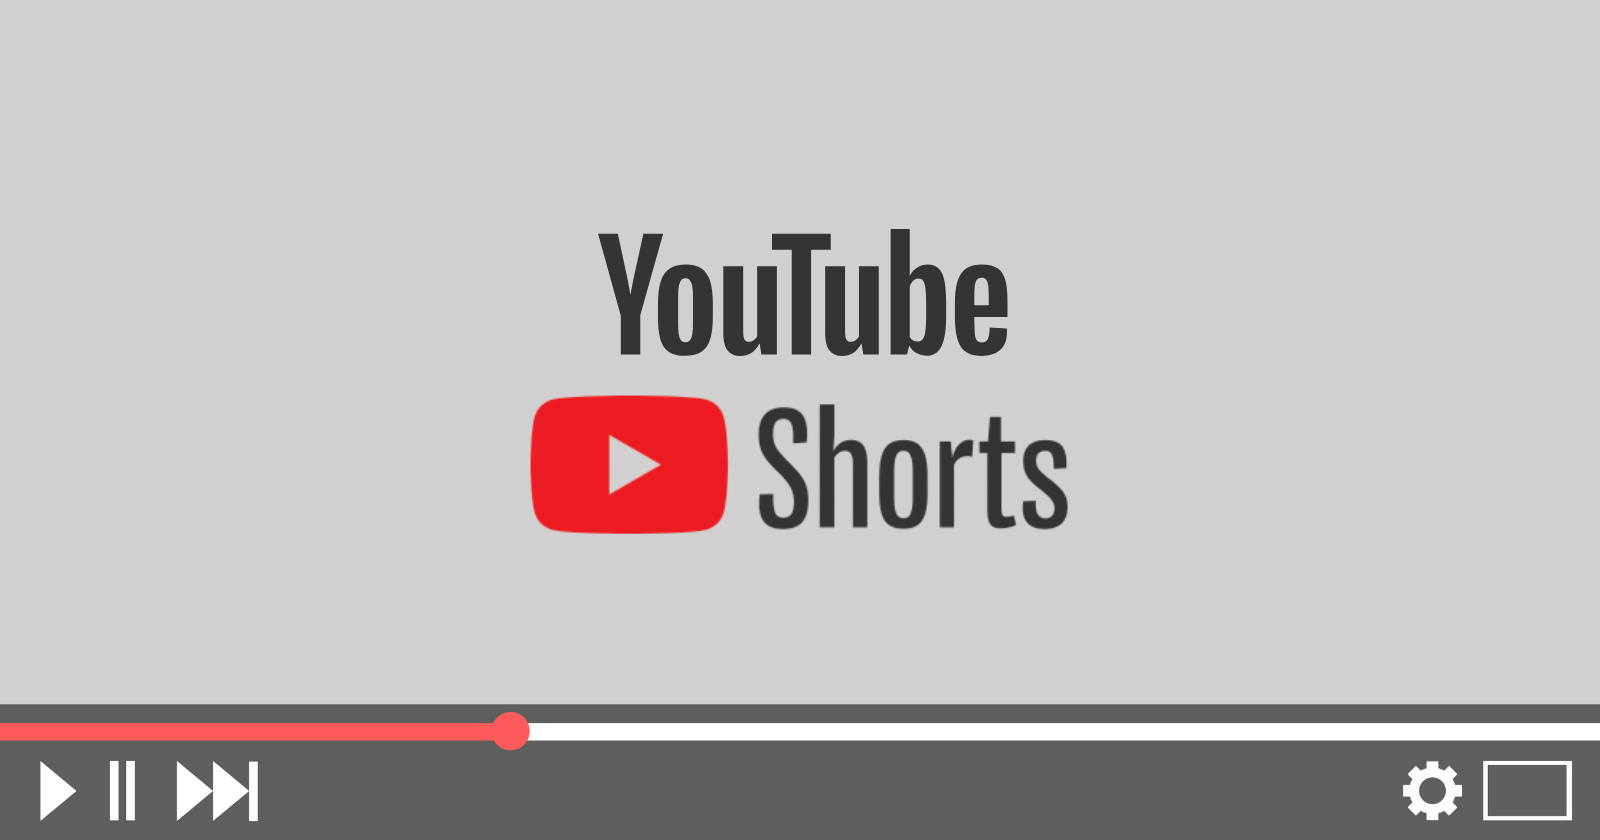 Youtube shorts 1. Shorts ютуб. Yuotobe.shoyrts. Youtube Shortis. Логотип ютуб Шортс.